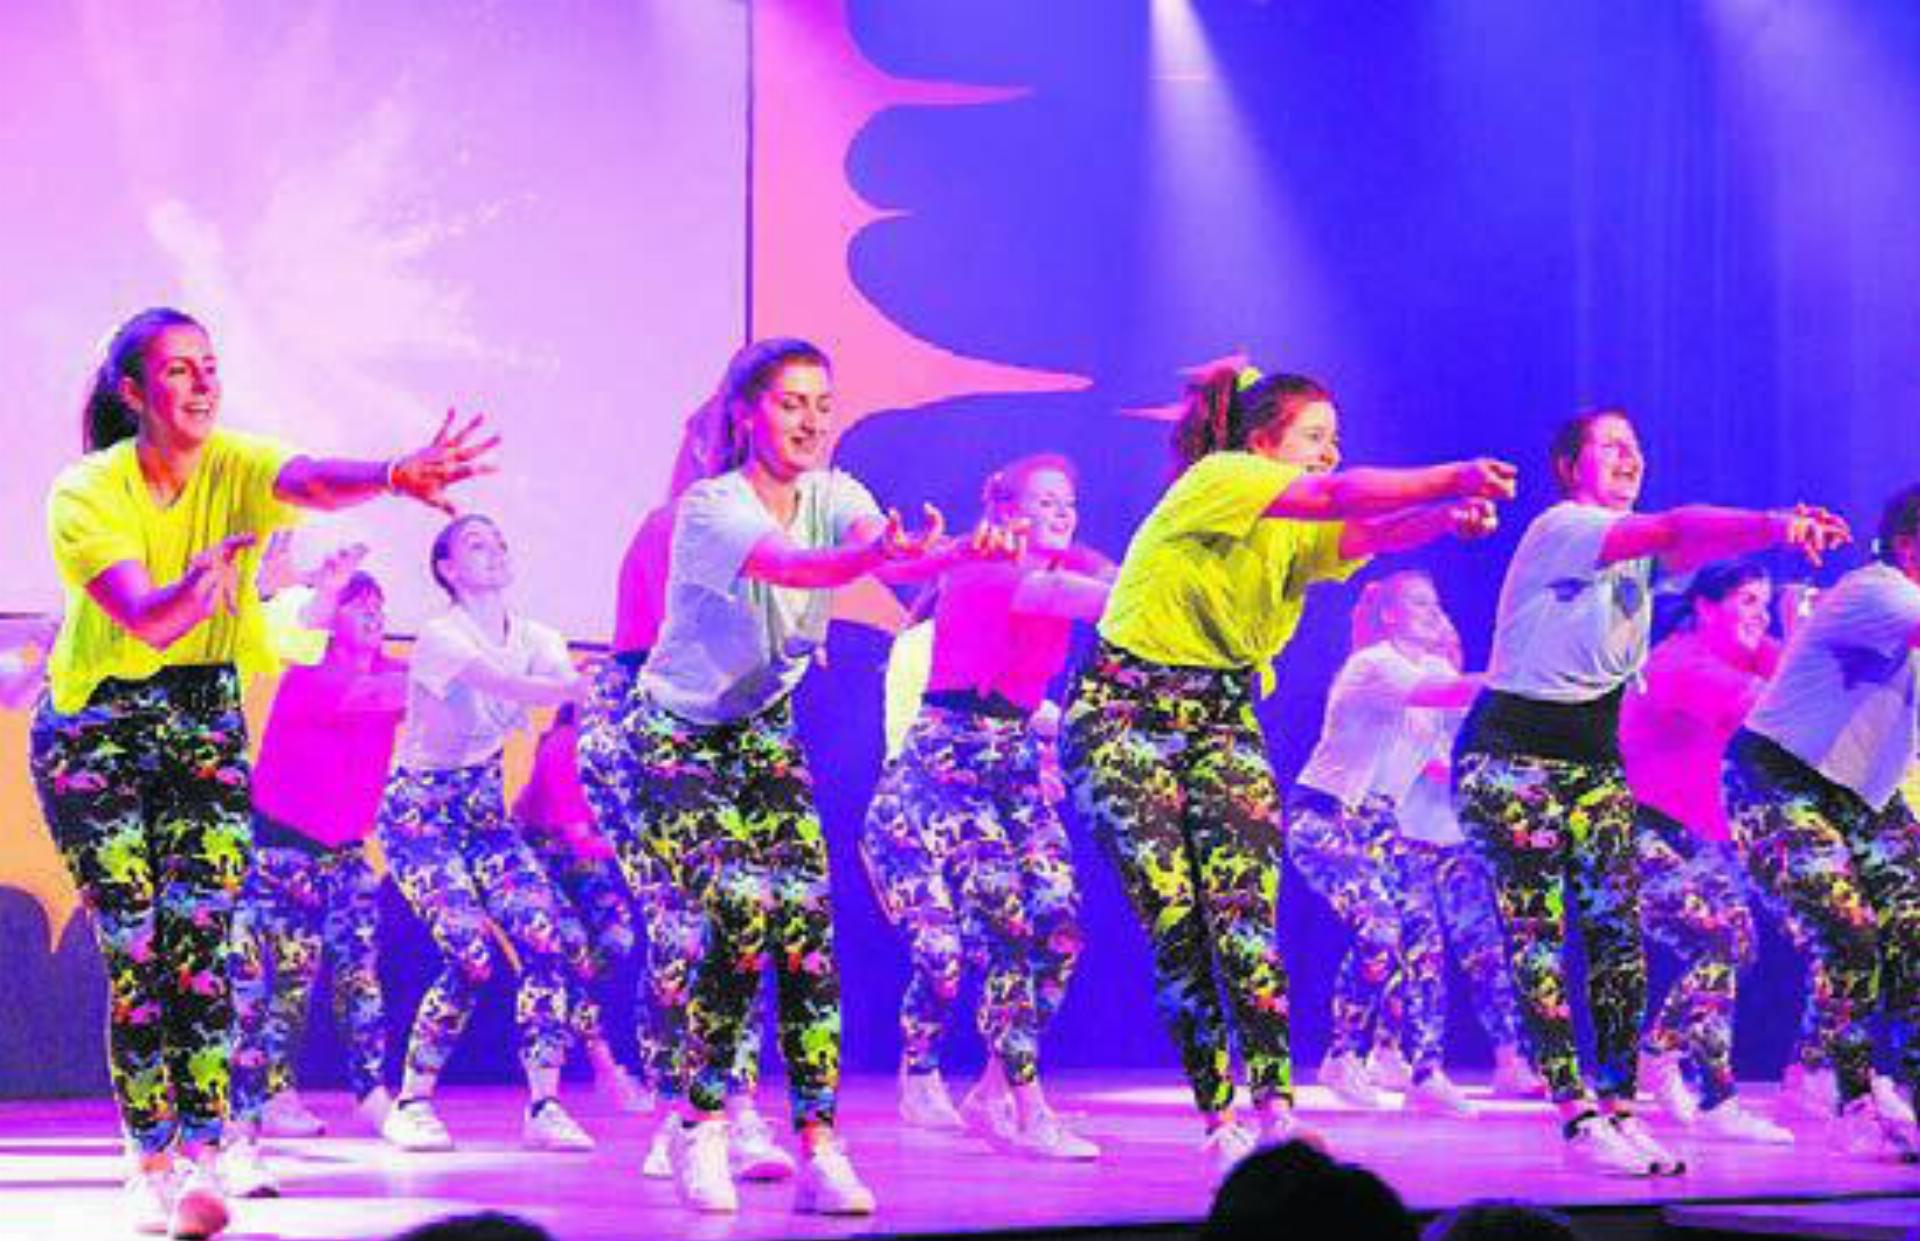 Musik, Tanz und jede Menge Spass hat der DTV Aerobic mit seiner Darbietung auf der Bühne.